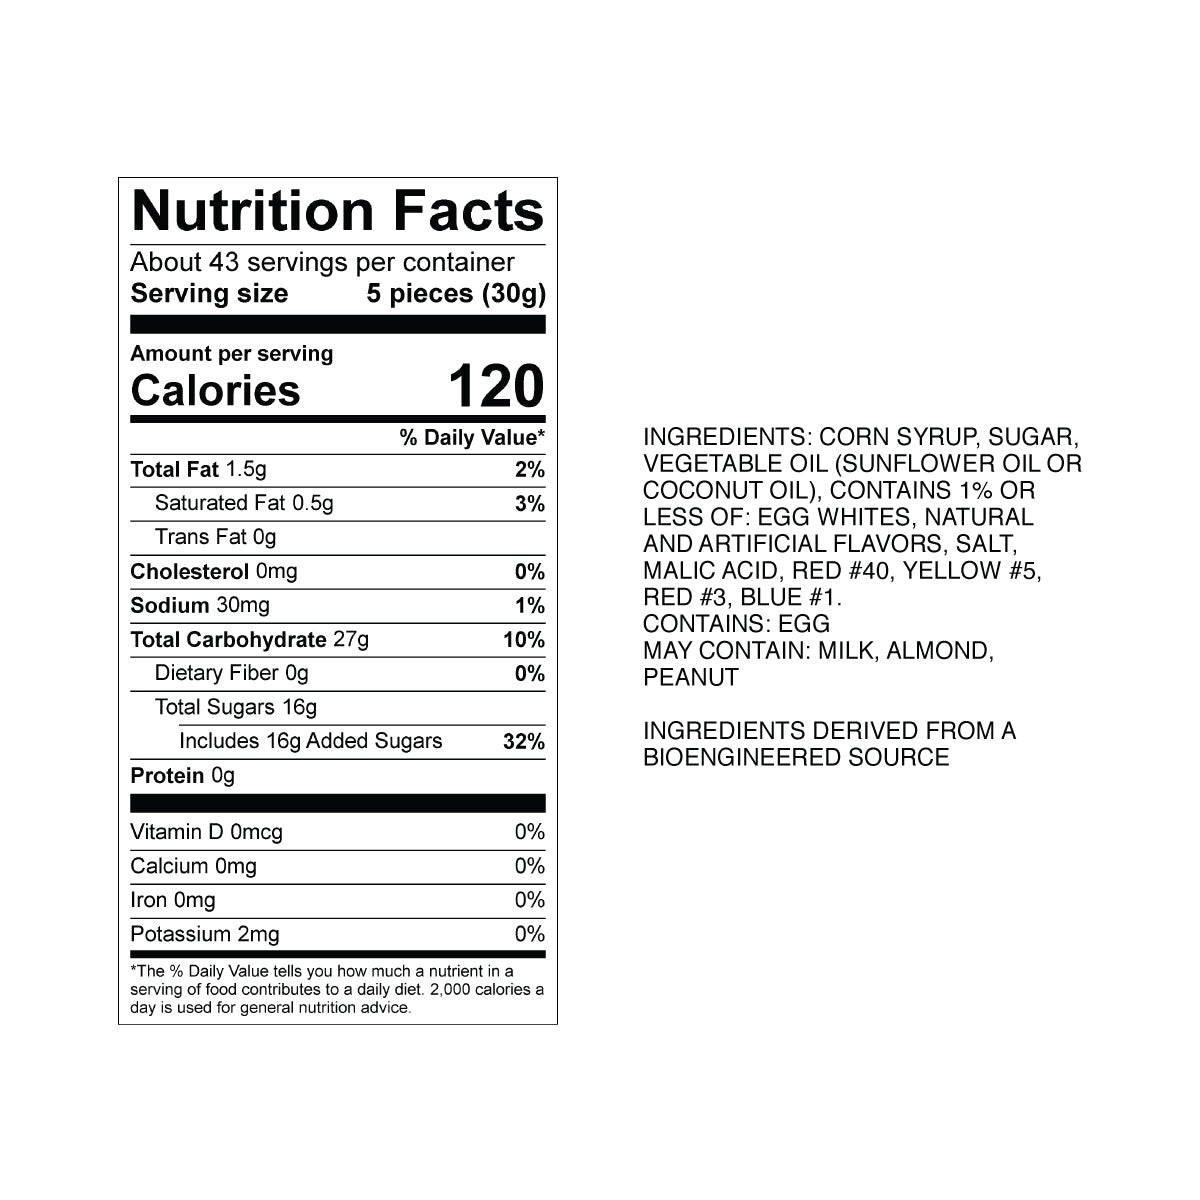 Sweet's Neapolitan Taffy Nutrition Fact Panel & Ingredients for the NET WT 2.82LB (1.28kg) Bulk Bag